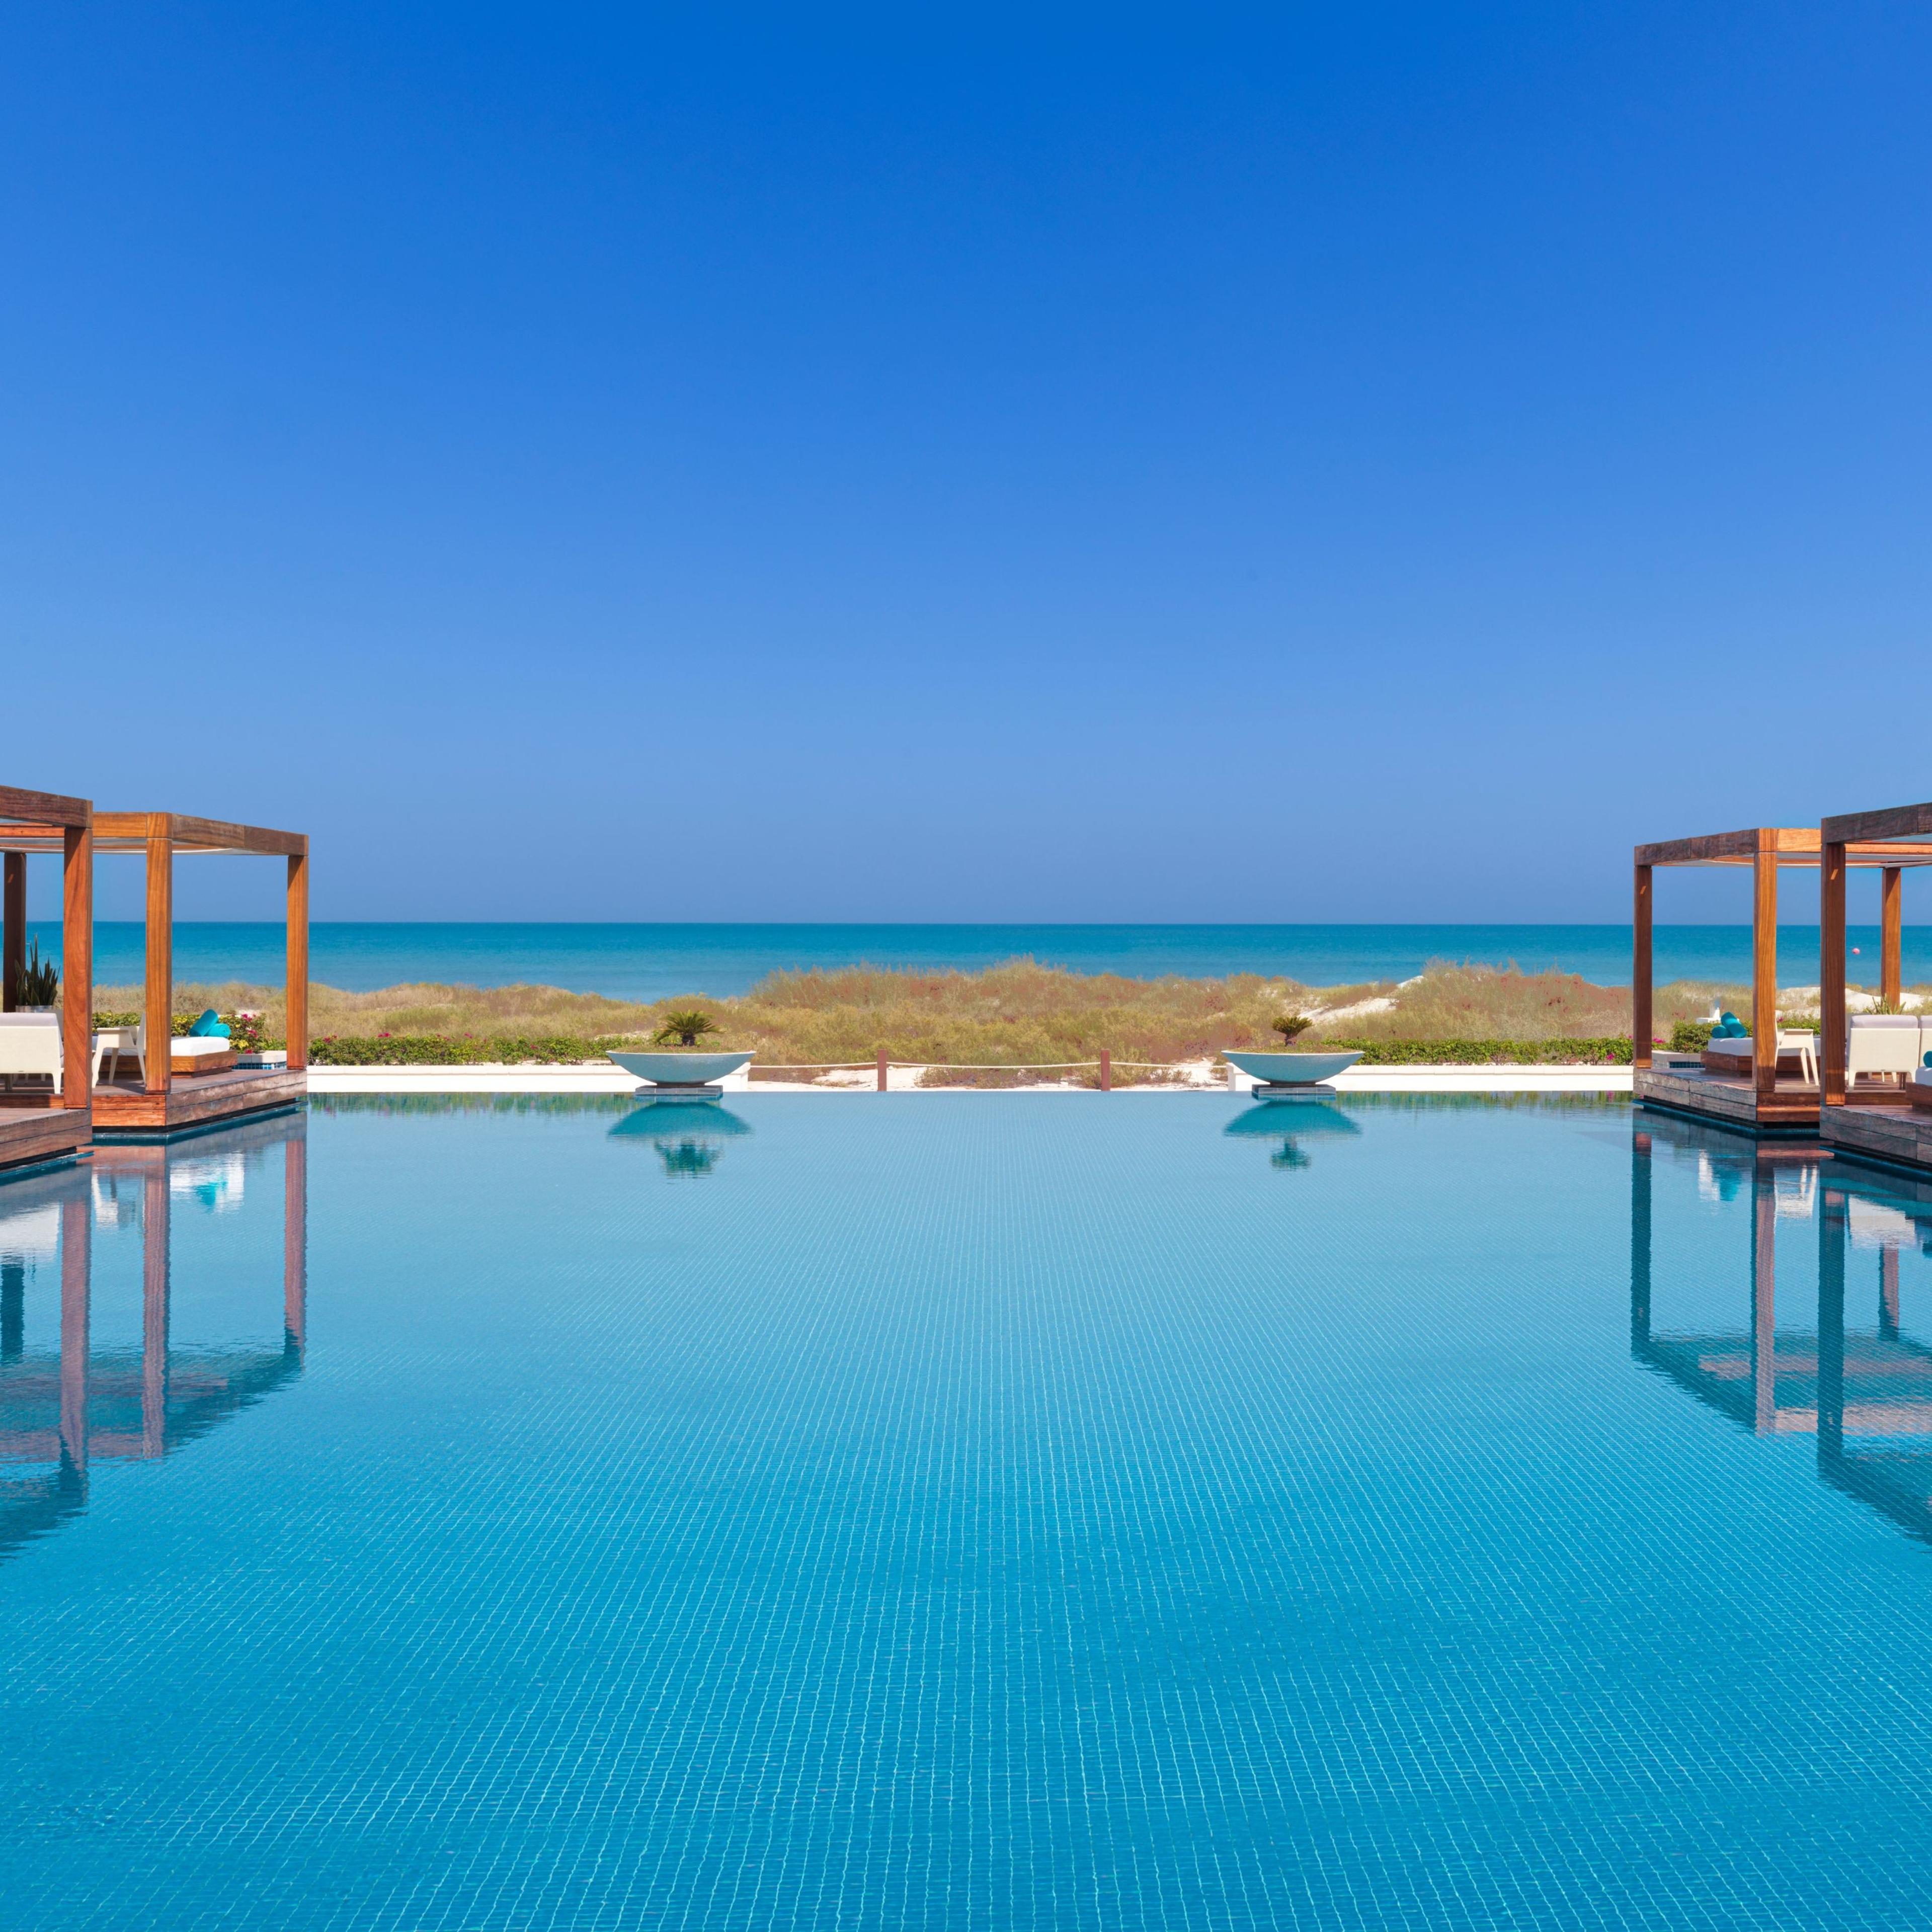 Saadiyat Beach Club - Luxury Beach Club in Abu Dhabi